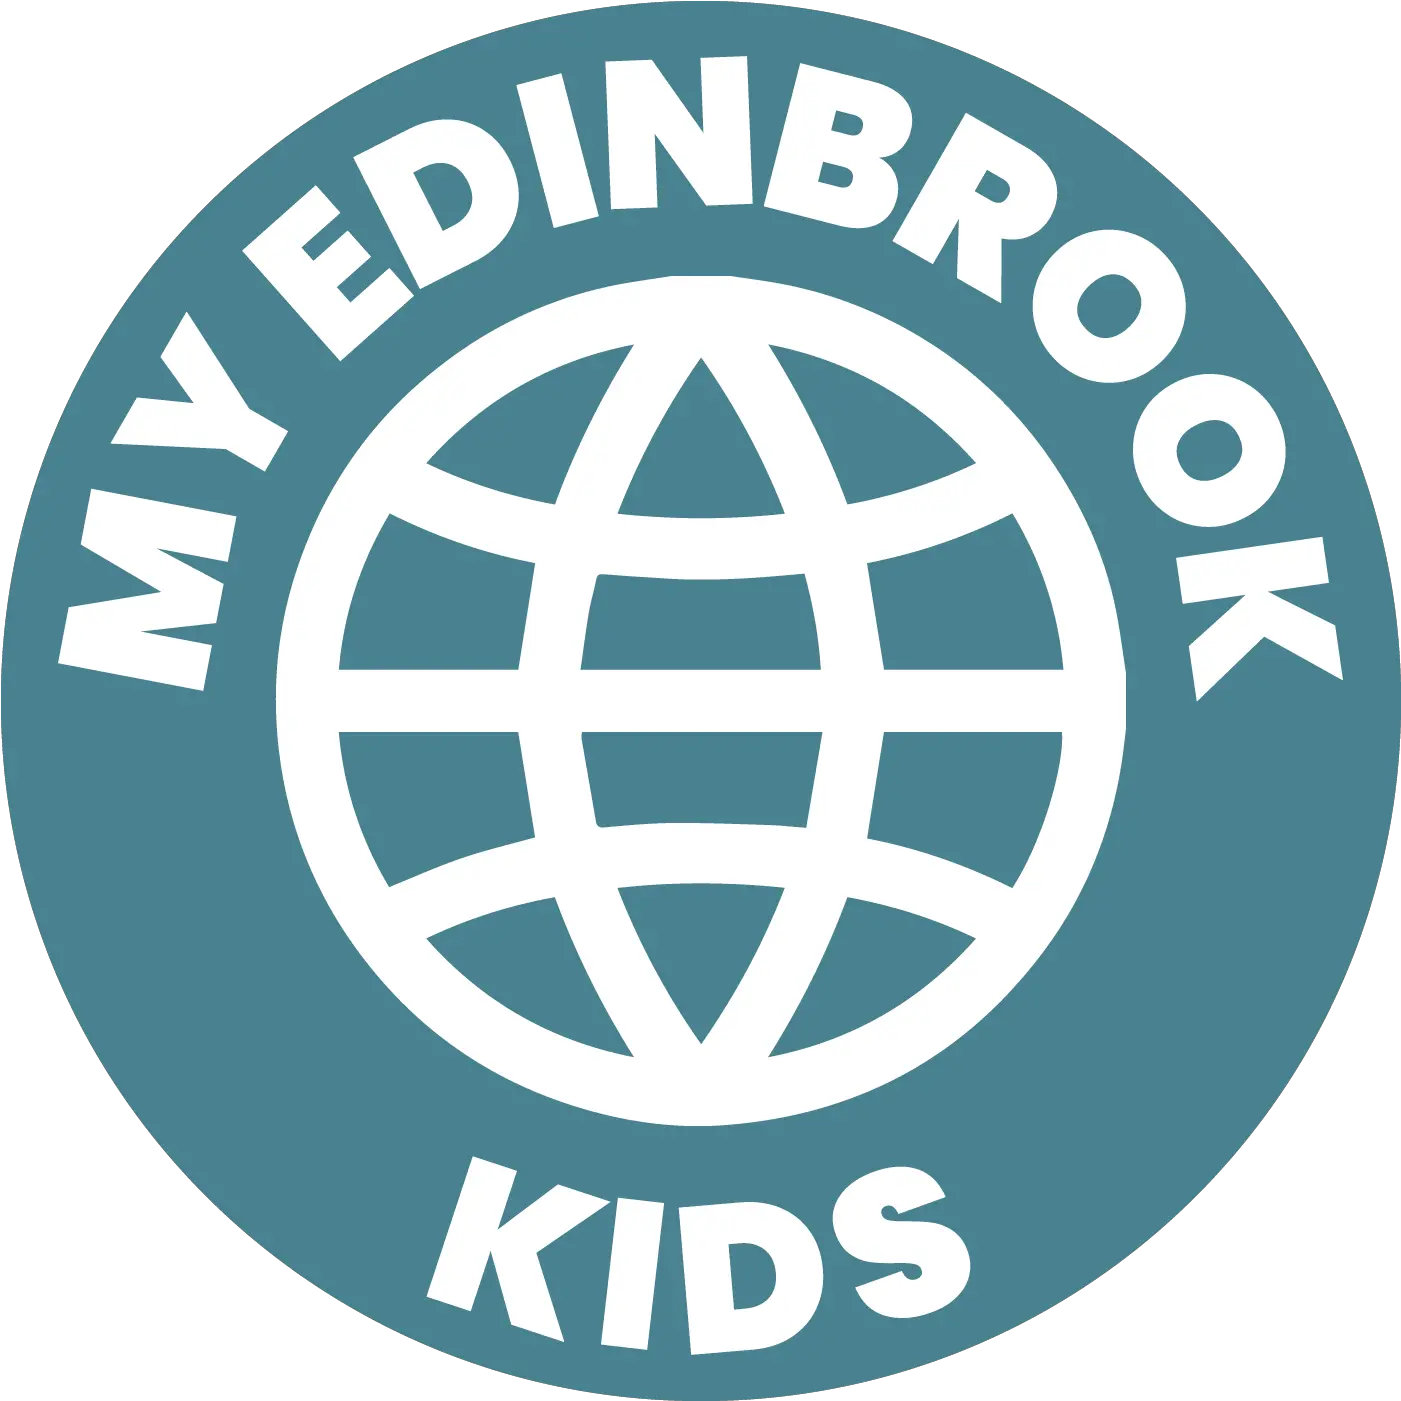 Kids Edinbrook Church U2014 Hajduk Png Kid Pix Icon